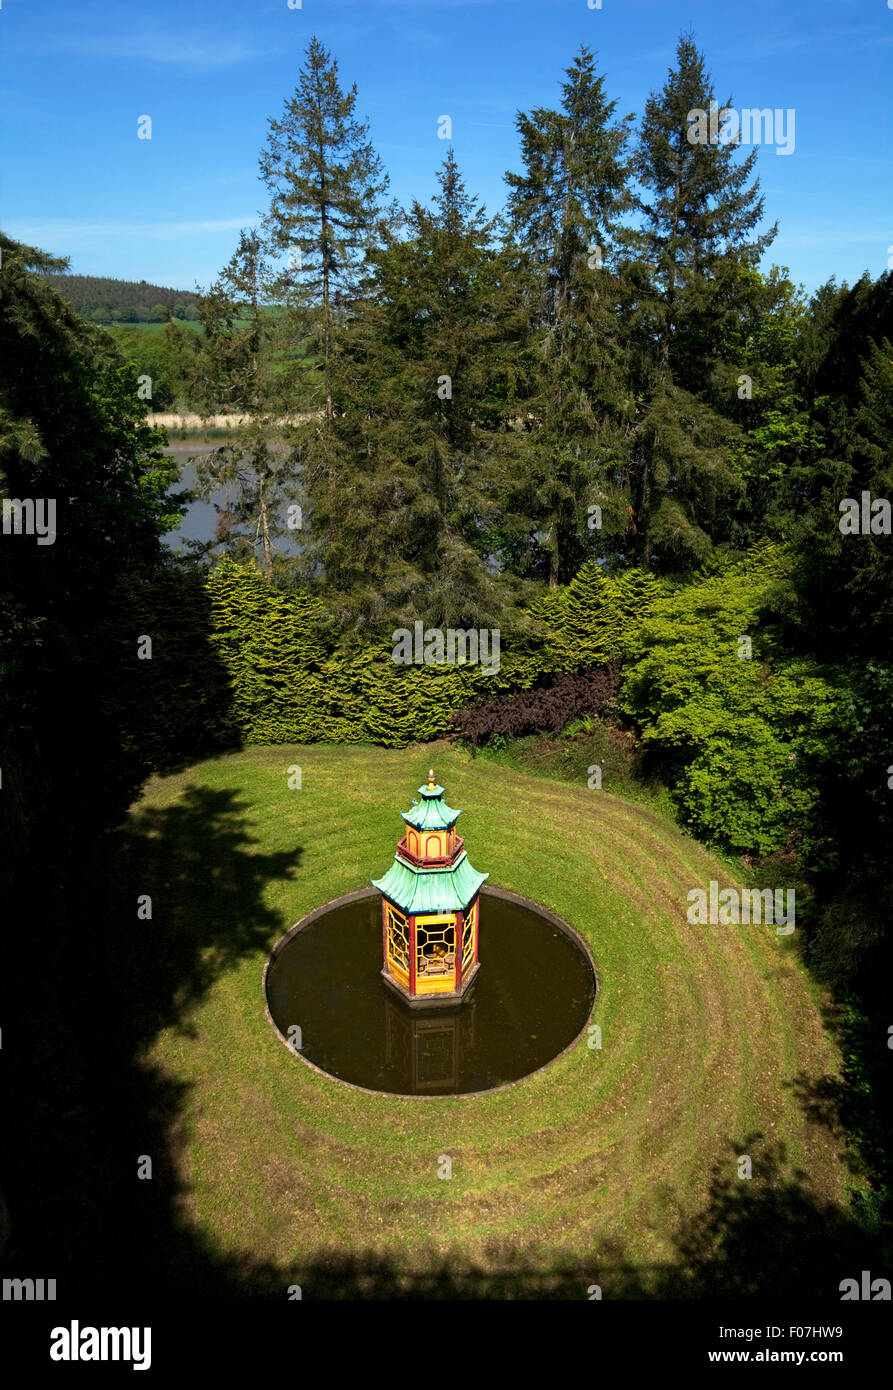 Japanisches Teehaus in einen natürlichen Dell, neben dem Fluss Suir, Mount Congreve Gardens, in der Nähe von Kilmeaden, Grafschaft Waterford, Irland Stockfoto